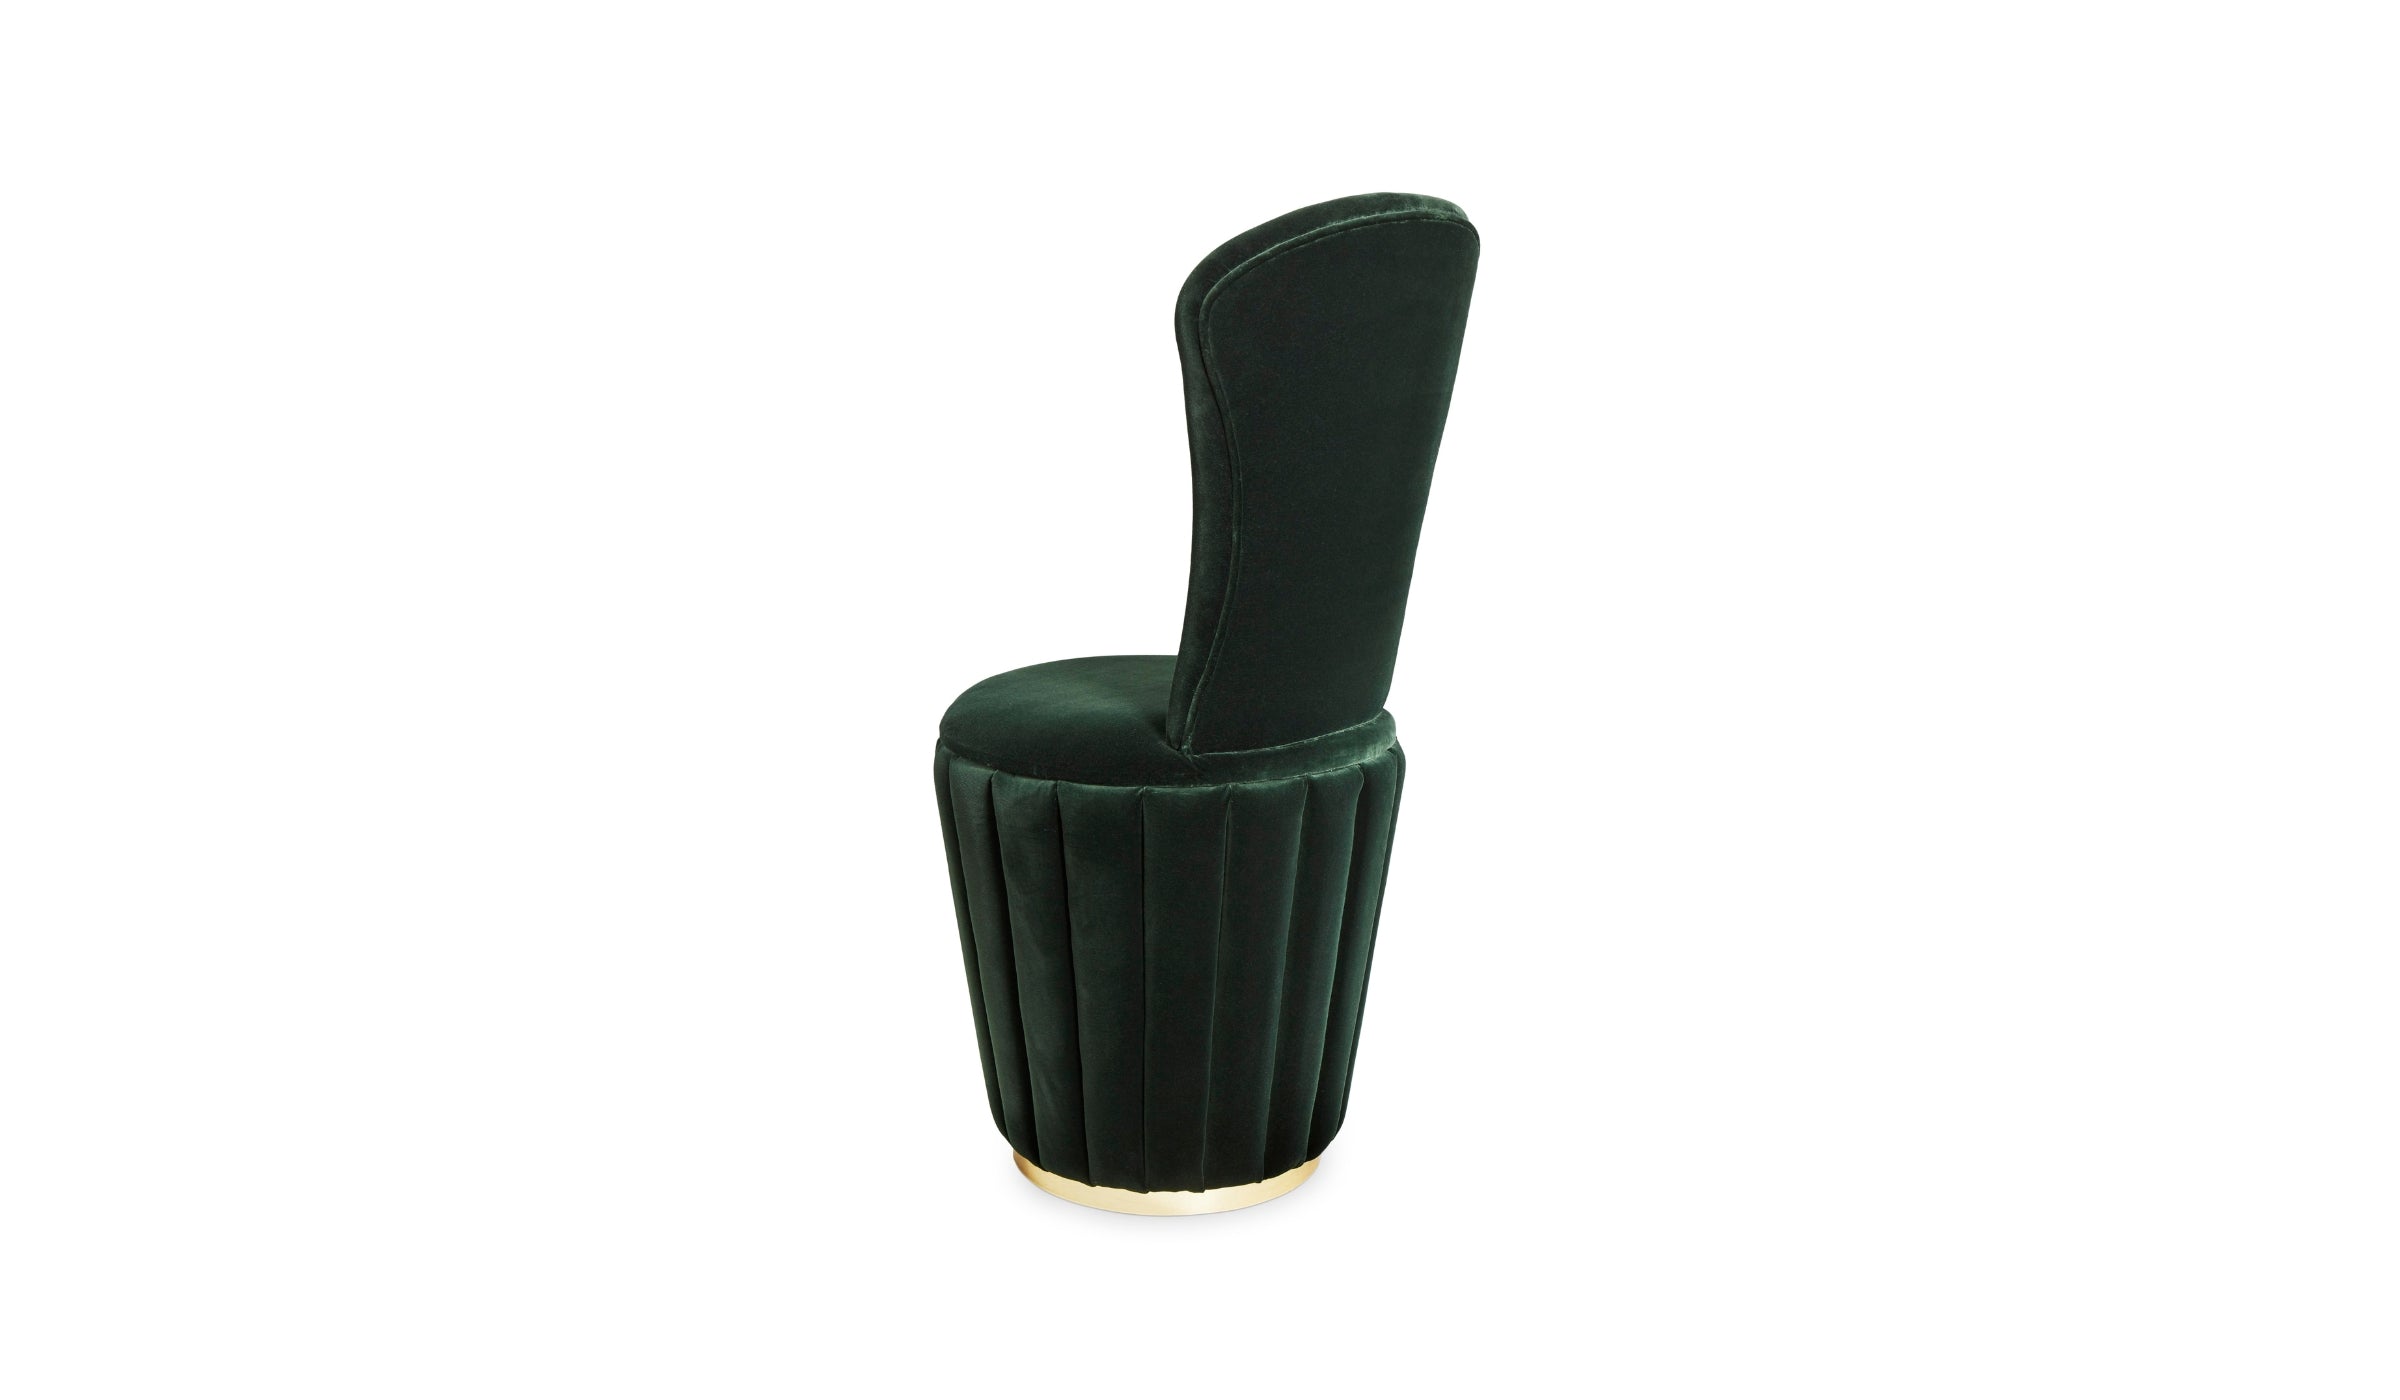 Svetlana - Chair with nevotex velvet covering, brass finish